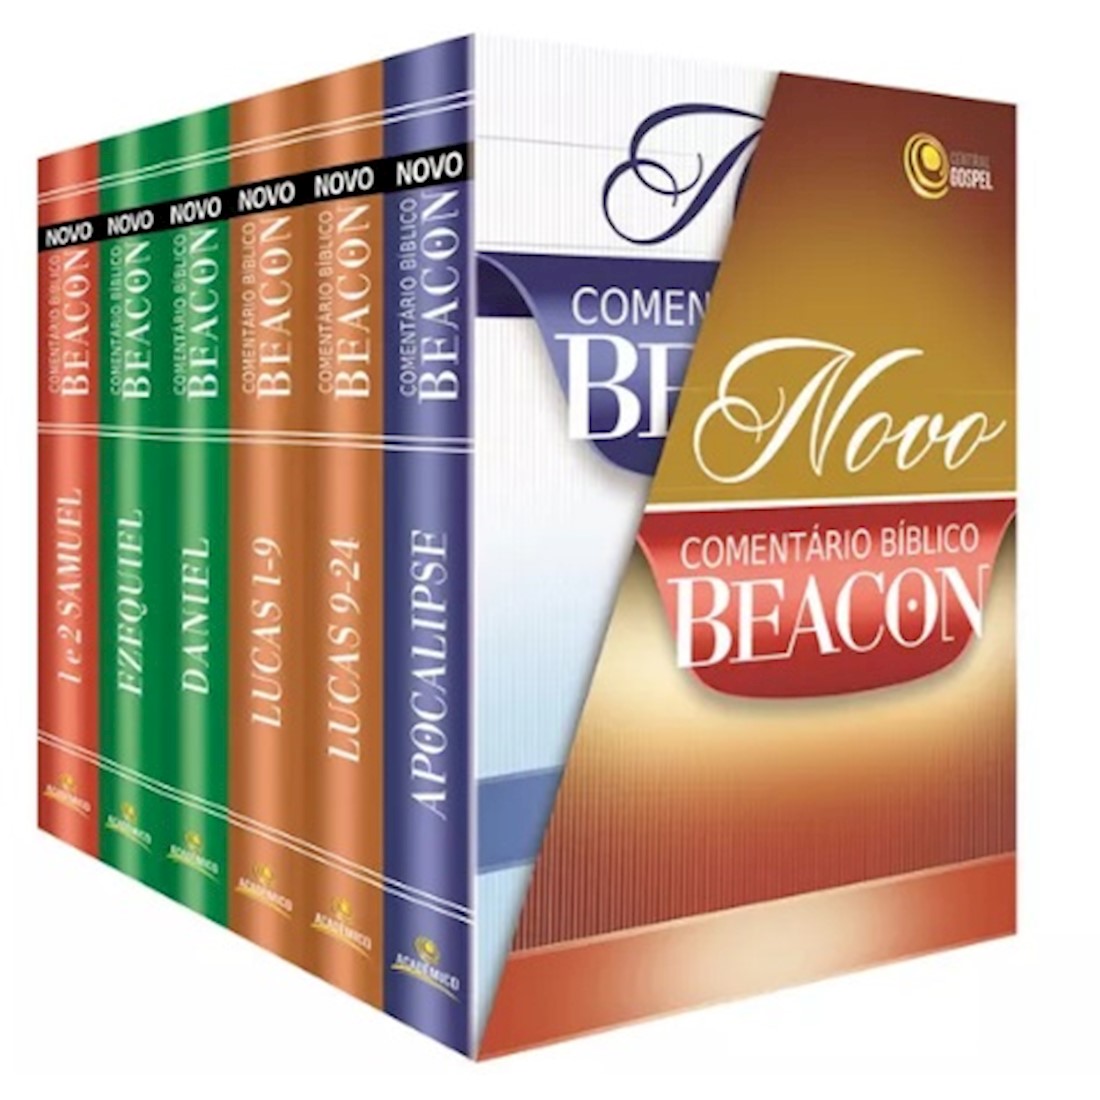 Novo Comentário Bíblico Beacon 6 Volumes